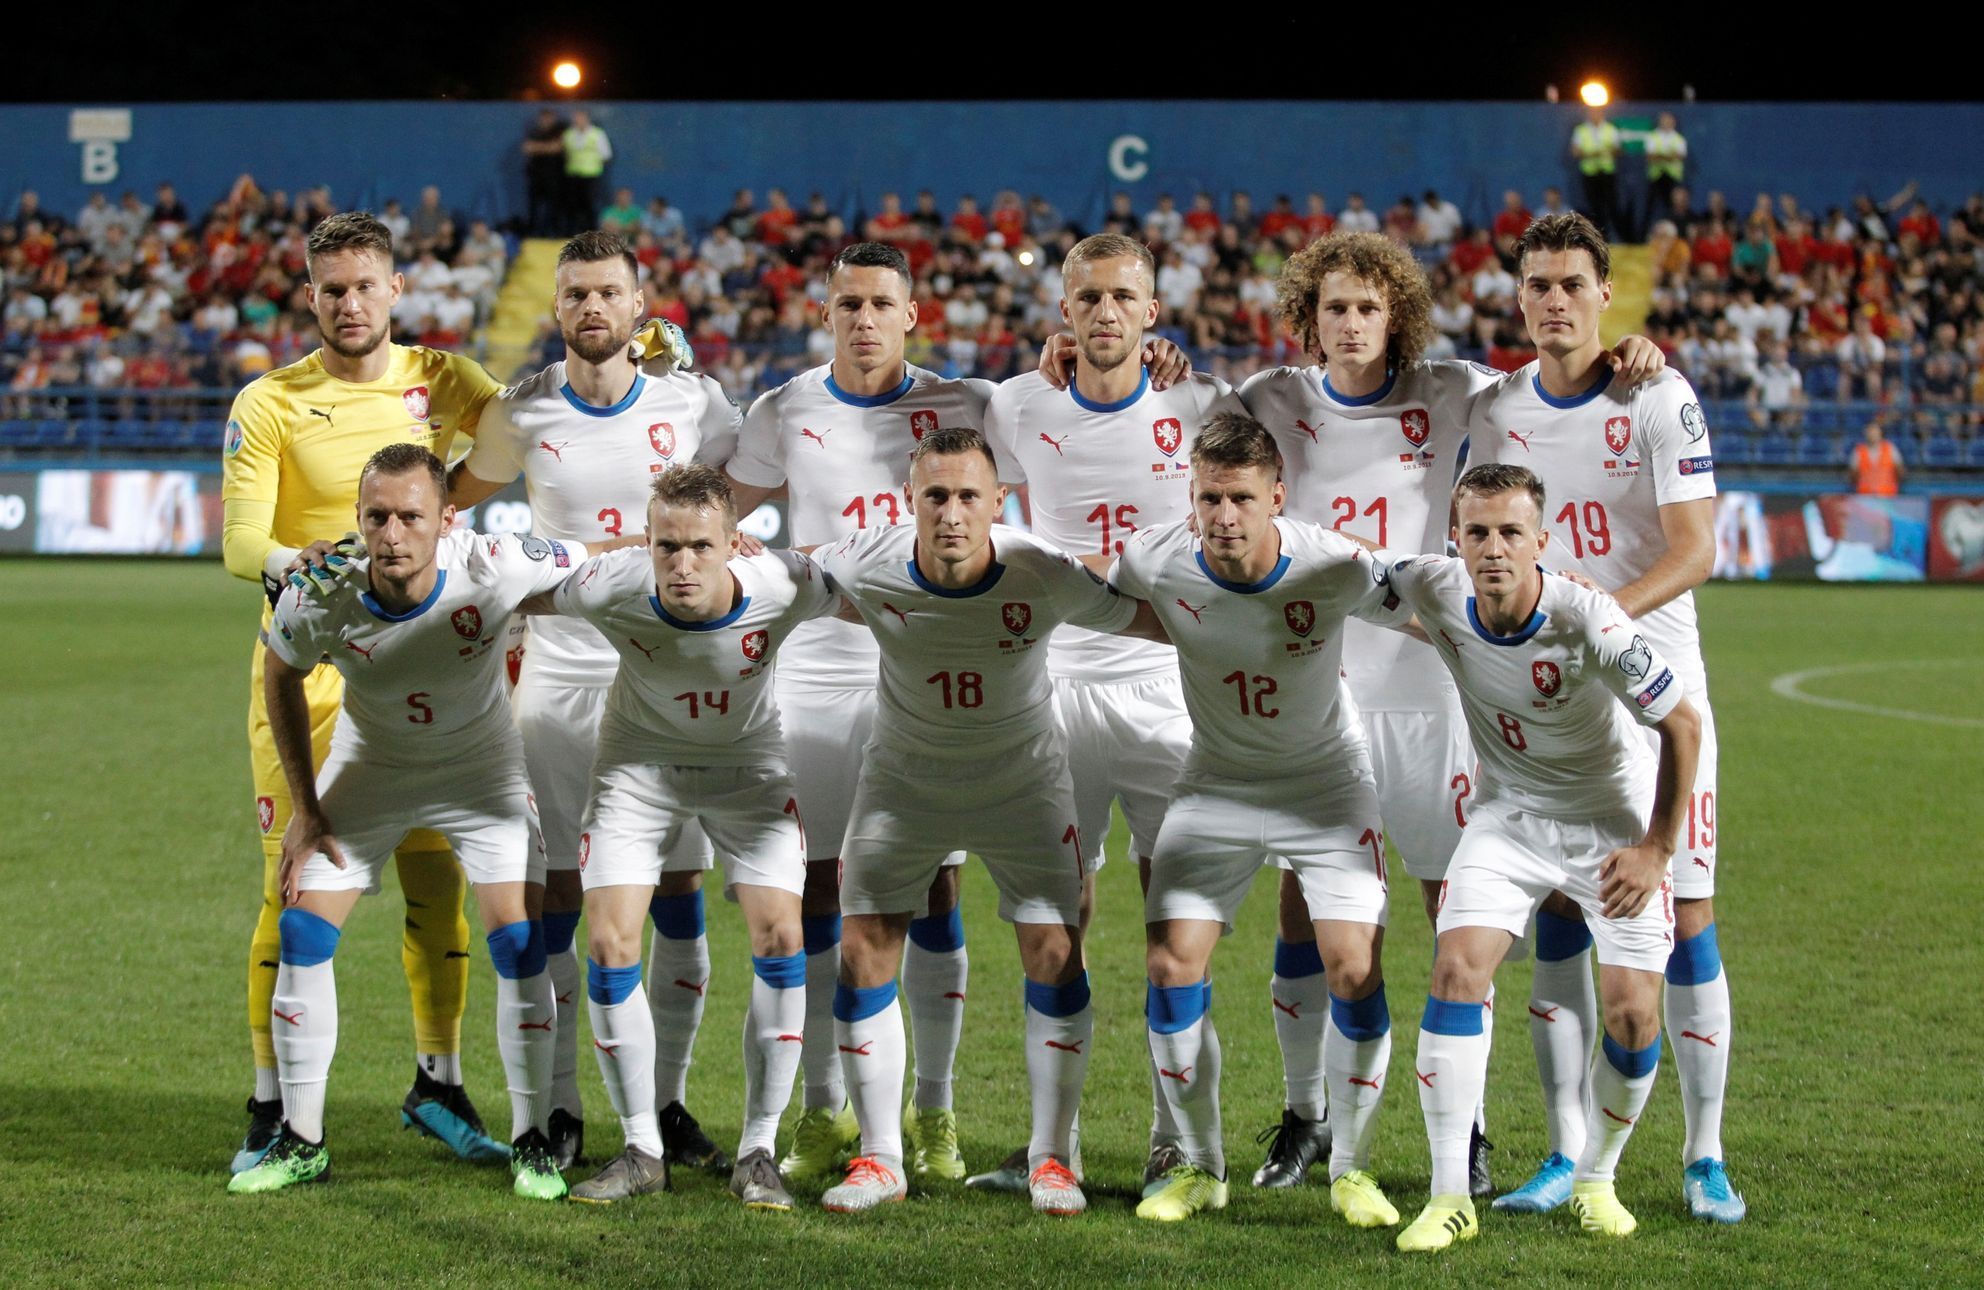 Čeští fotbalisté před zápasem kvalifikace ME 2020 Černá Hora - Česko.